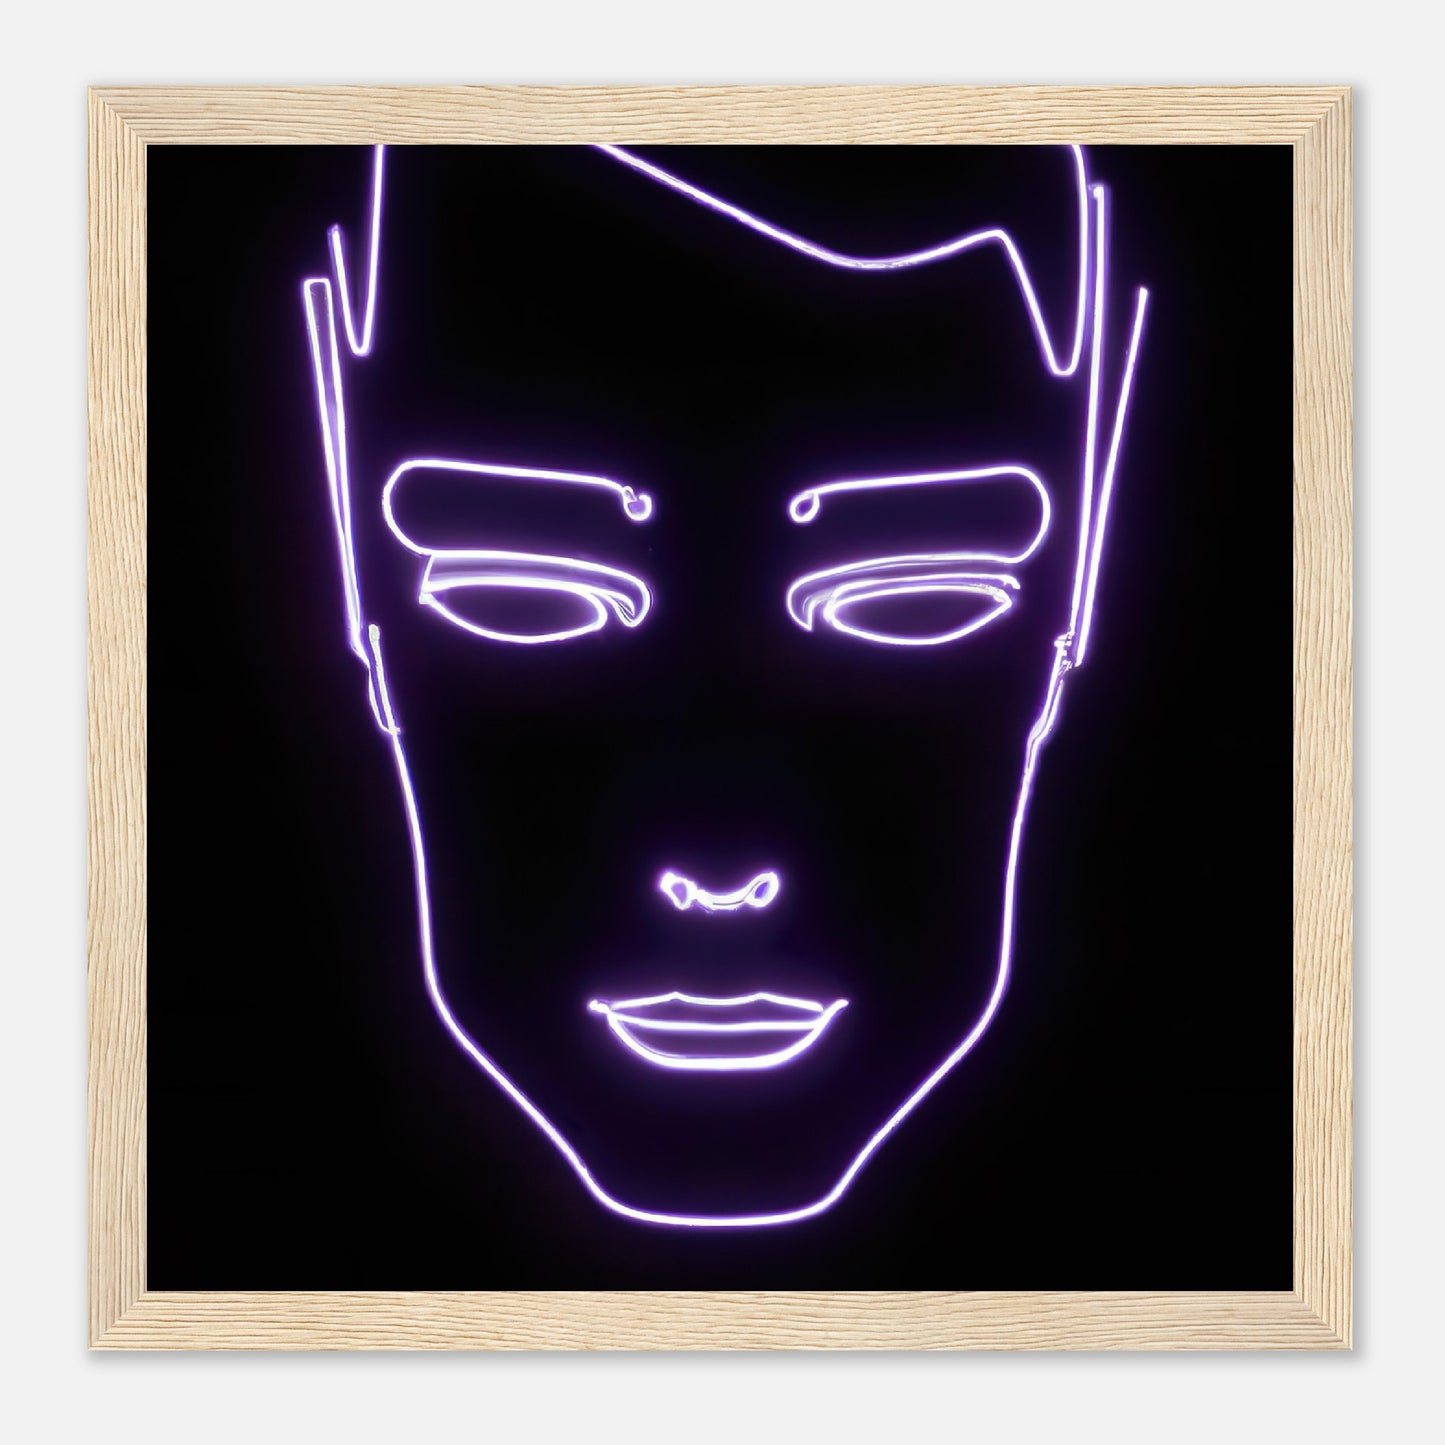 Gerahmtes Premium-Poster - Männliches Gesicht - Neon Stil, KI-Kunst - RolConArt, Neon, 30x30-cm-12x12-Holz